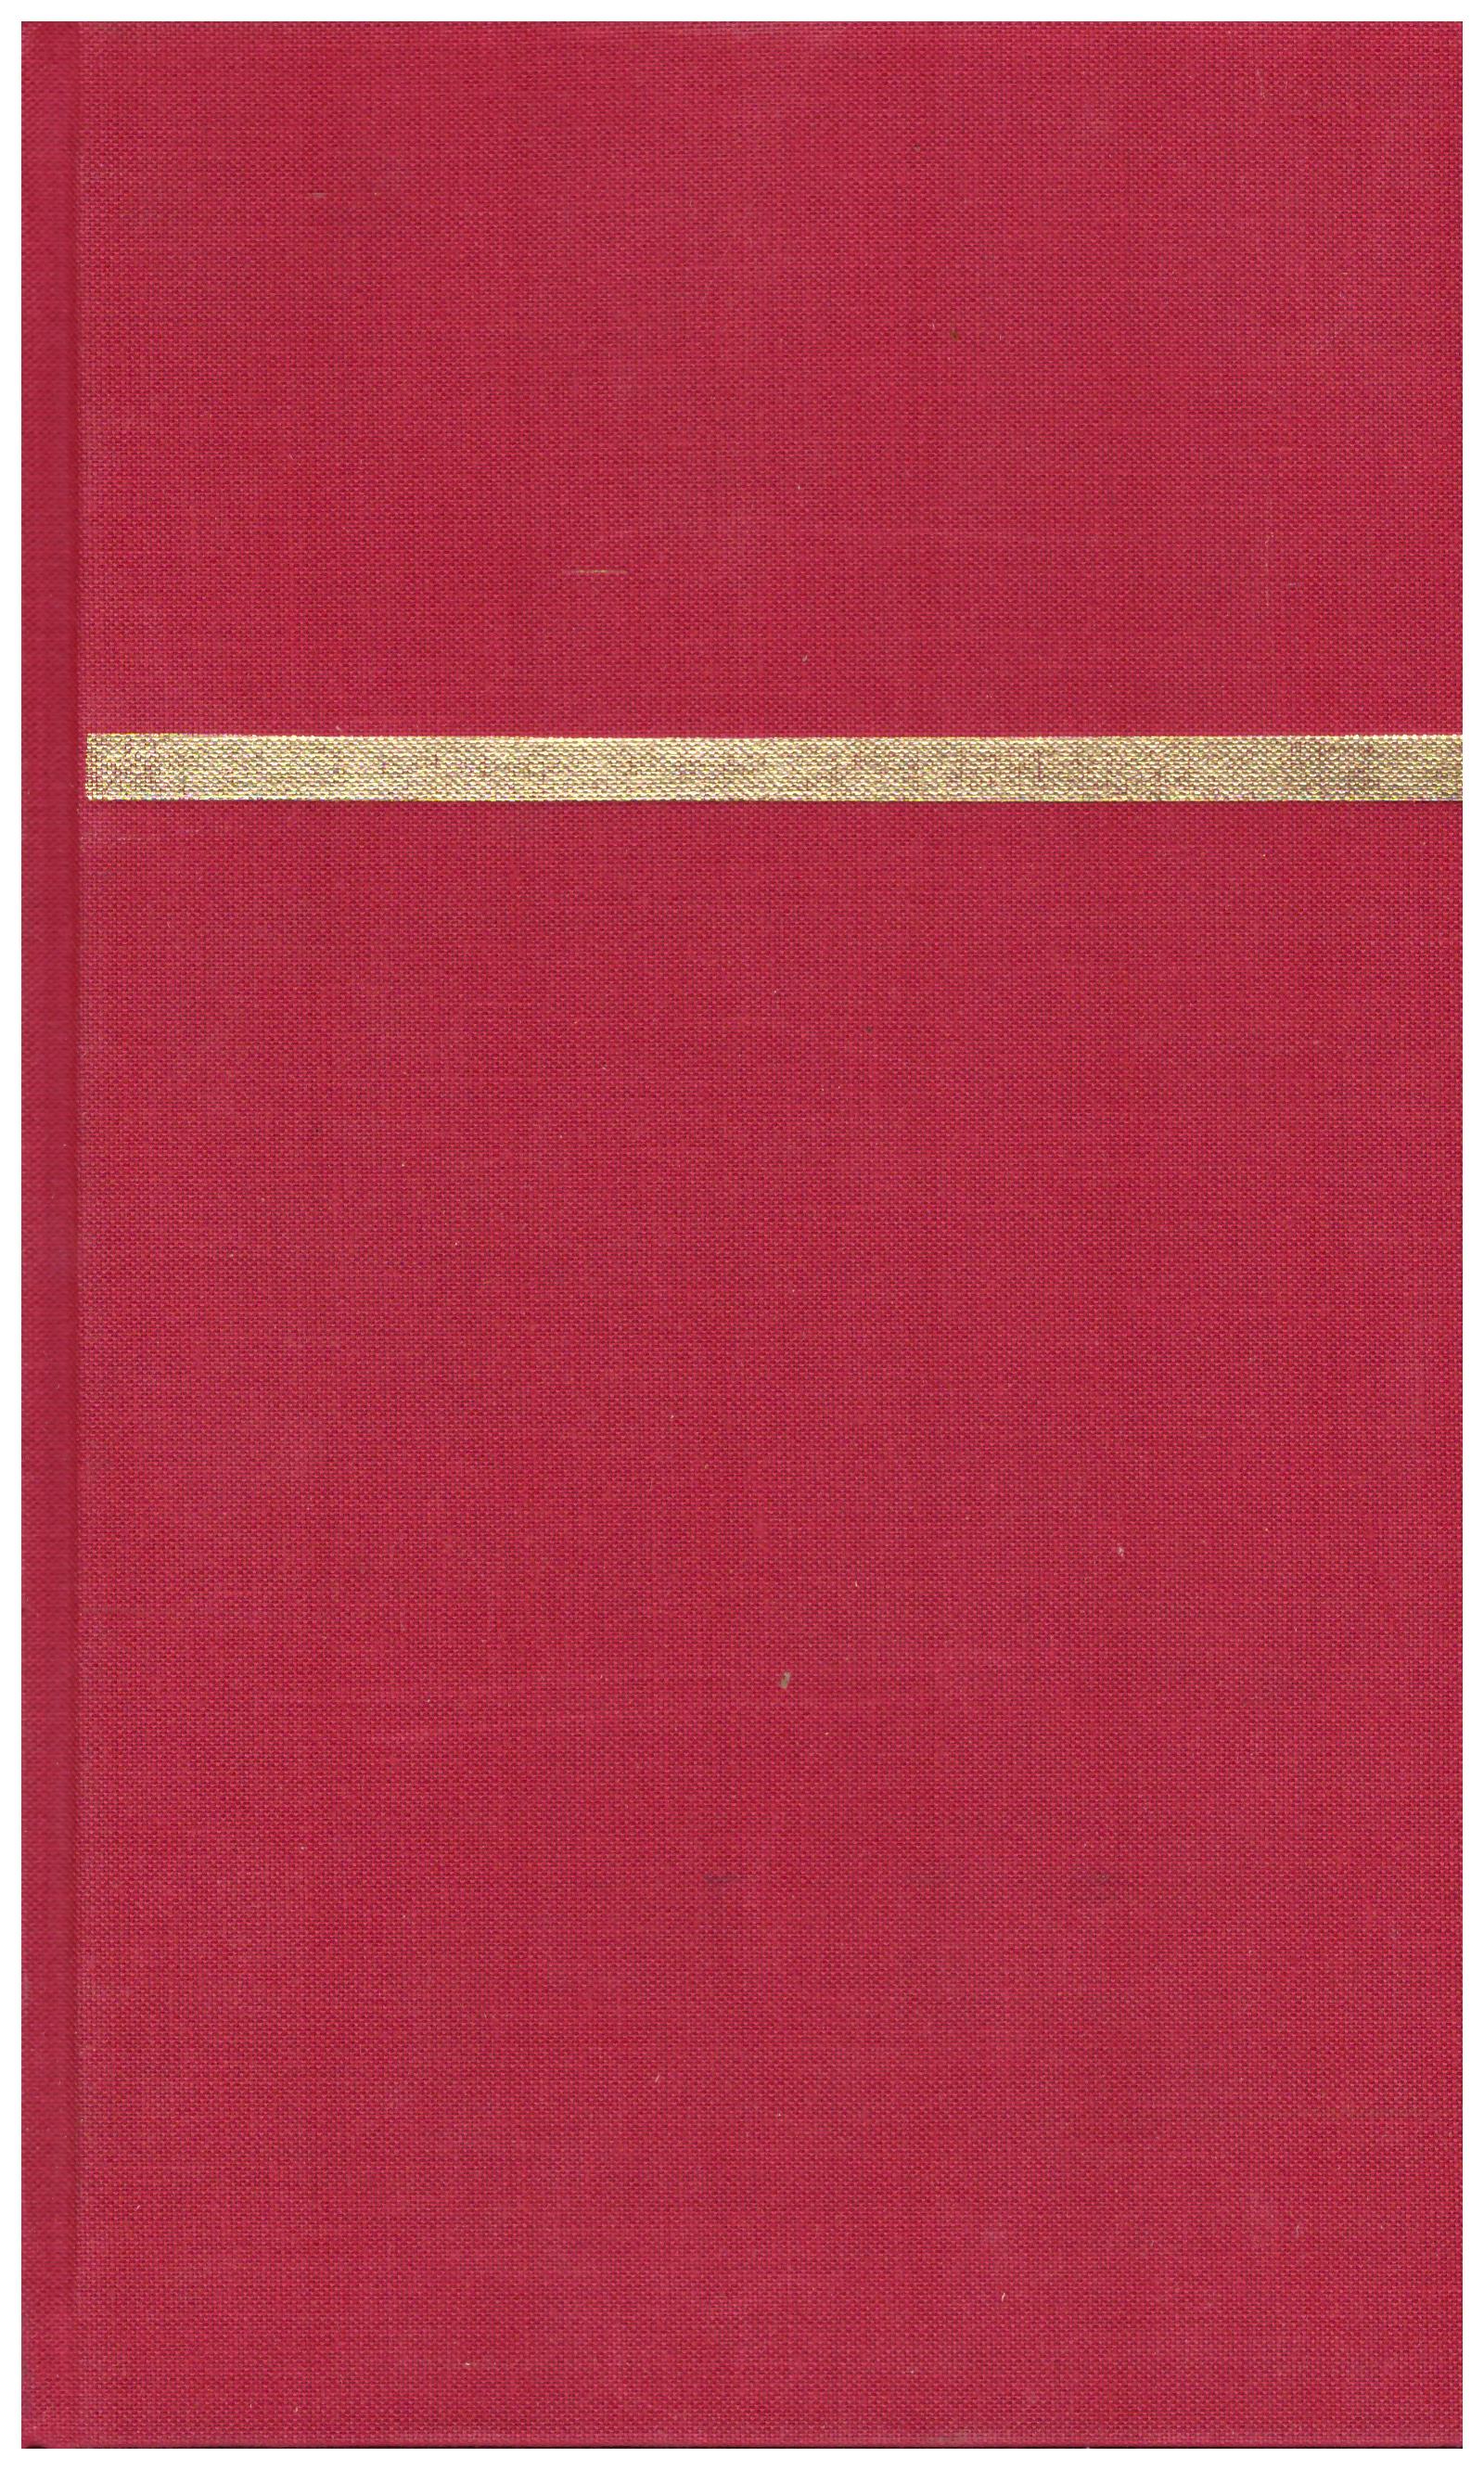 Titolo: Dizionario Bompiani degli autori  volume primo A-C    Autore: AA.VV.    Editore: Bompiani